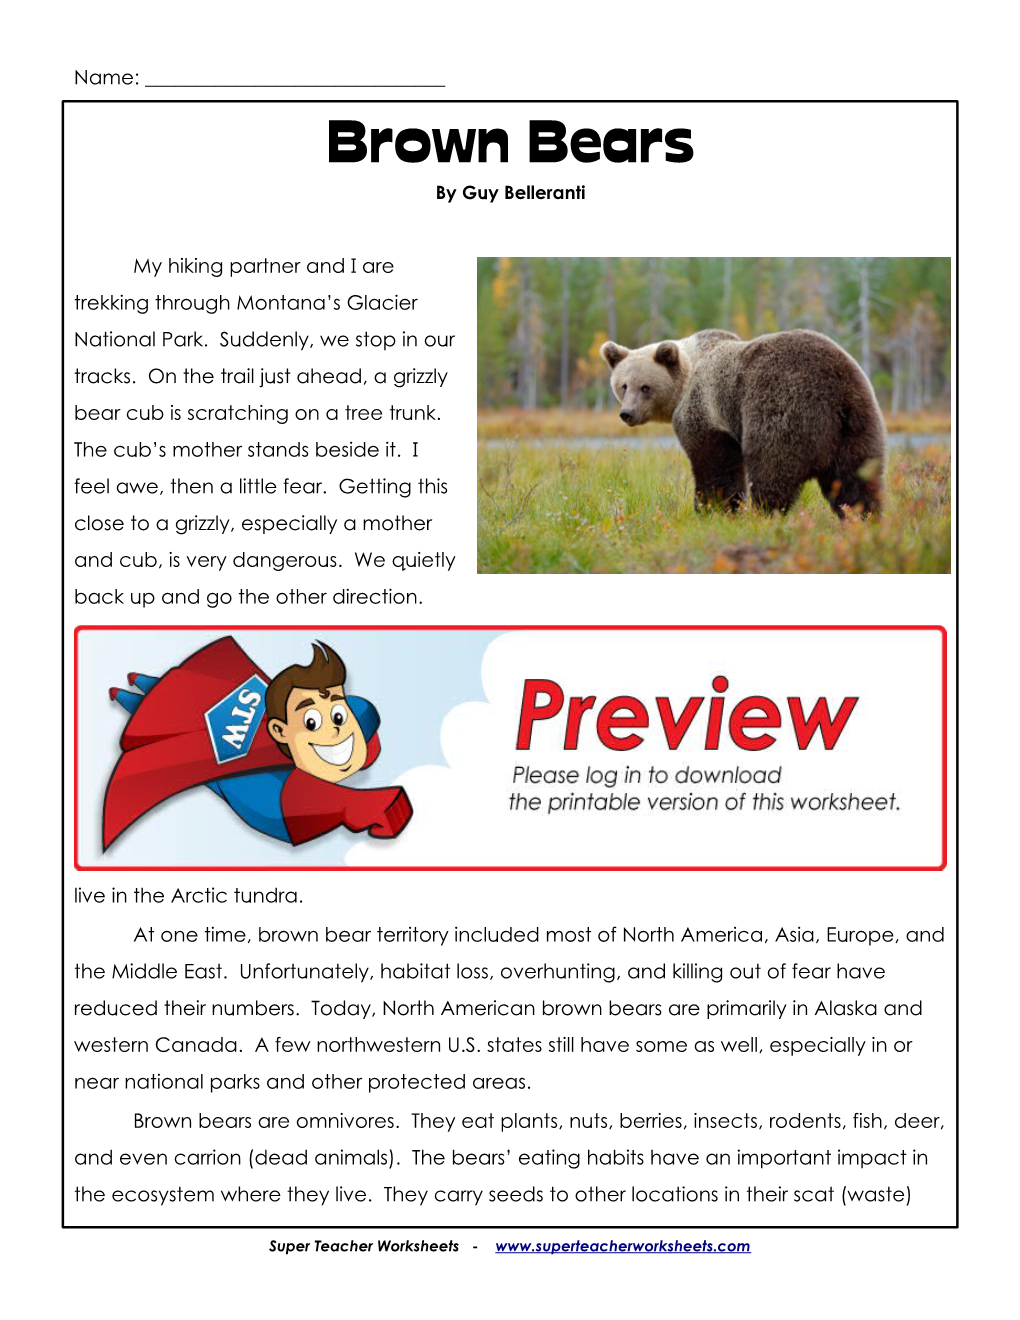 Brown Bears by Guy Belleranti